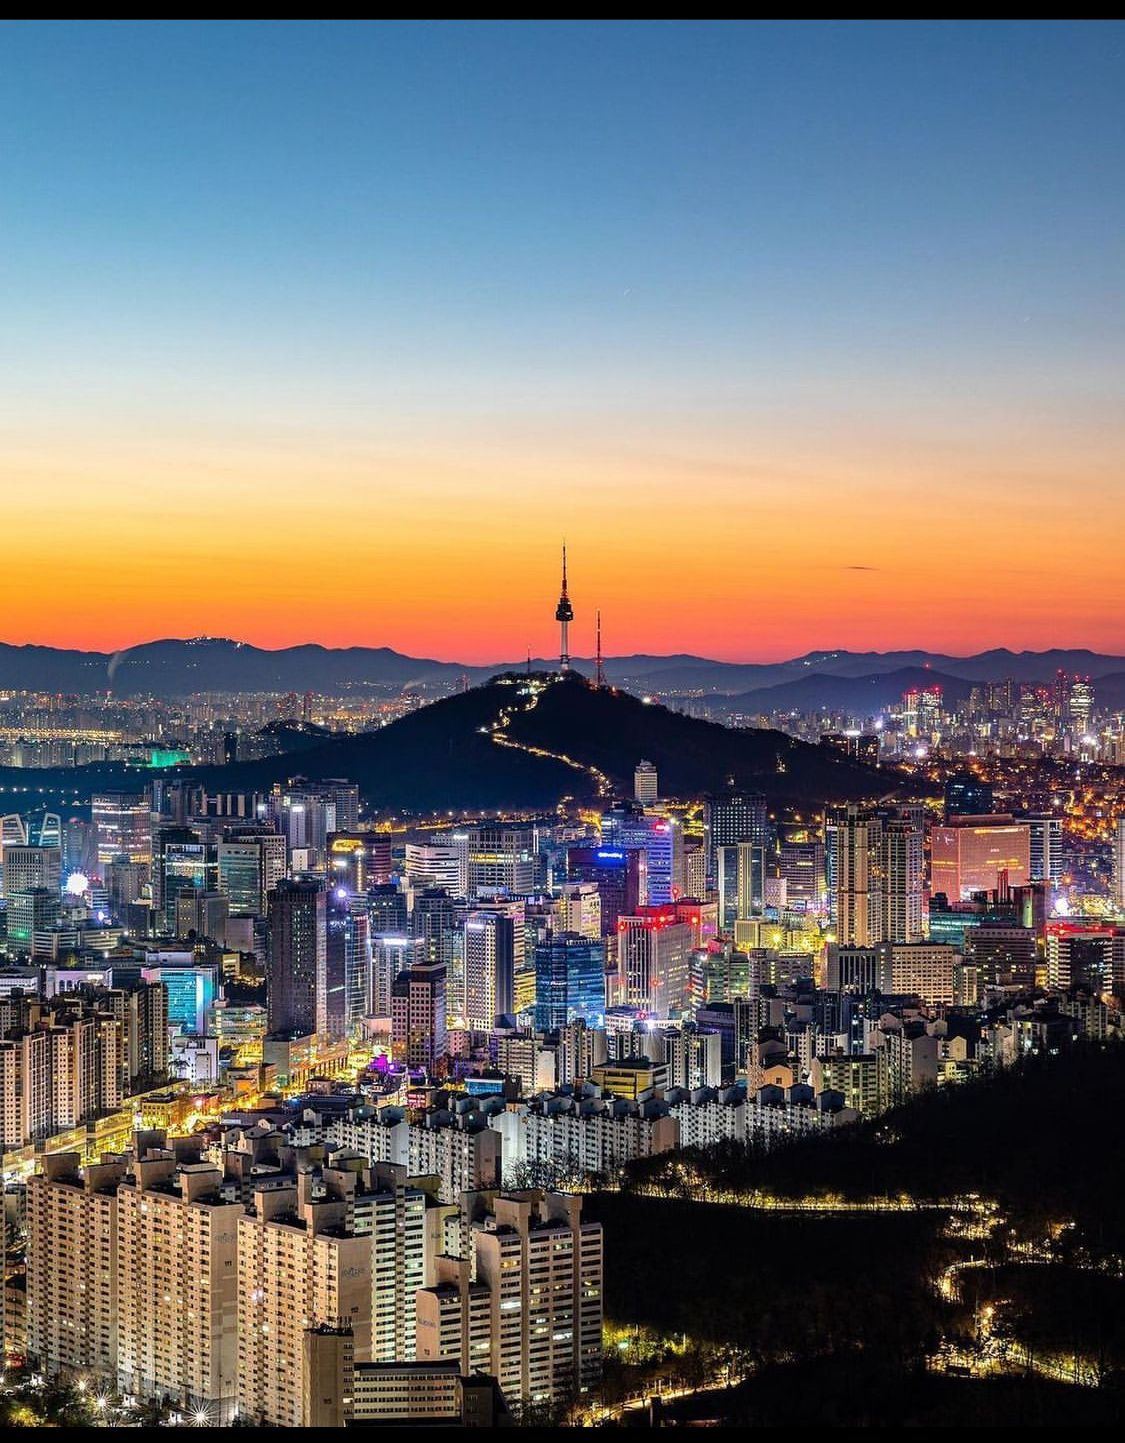 Seoul, Korea - Sunrise 